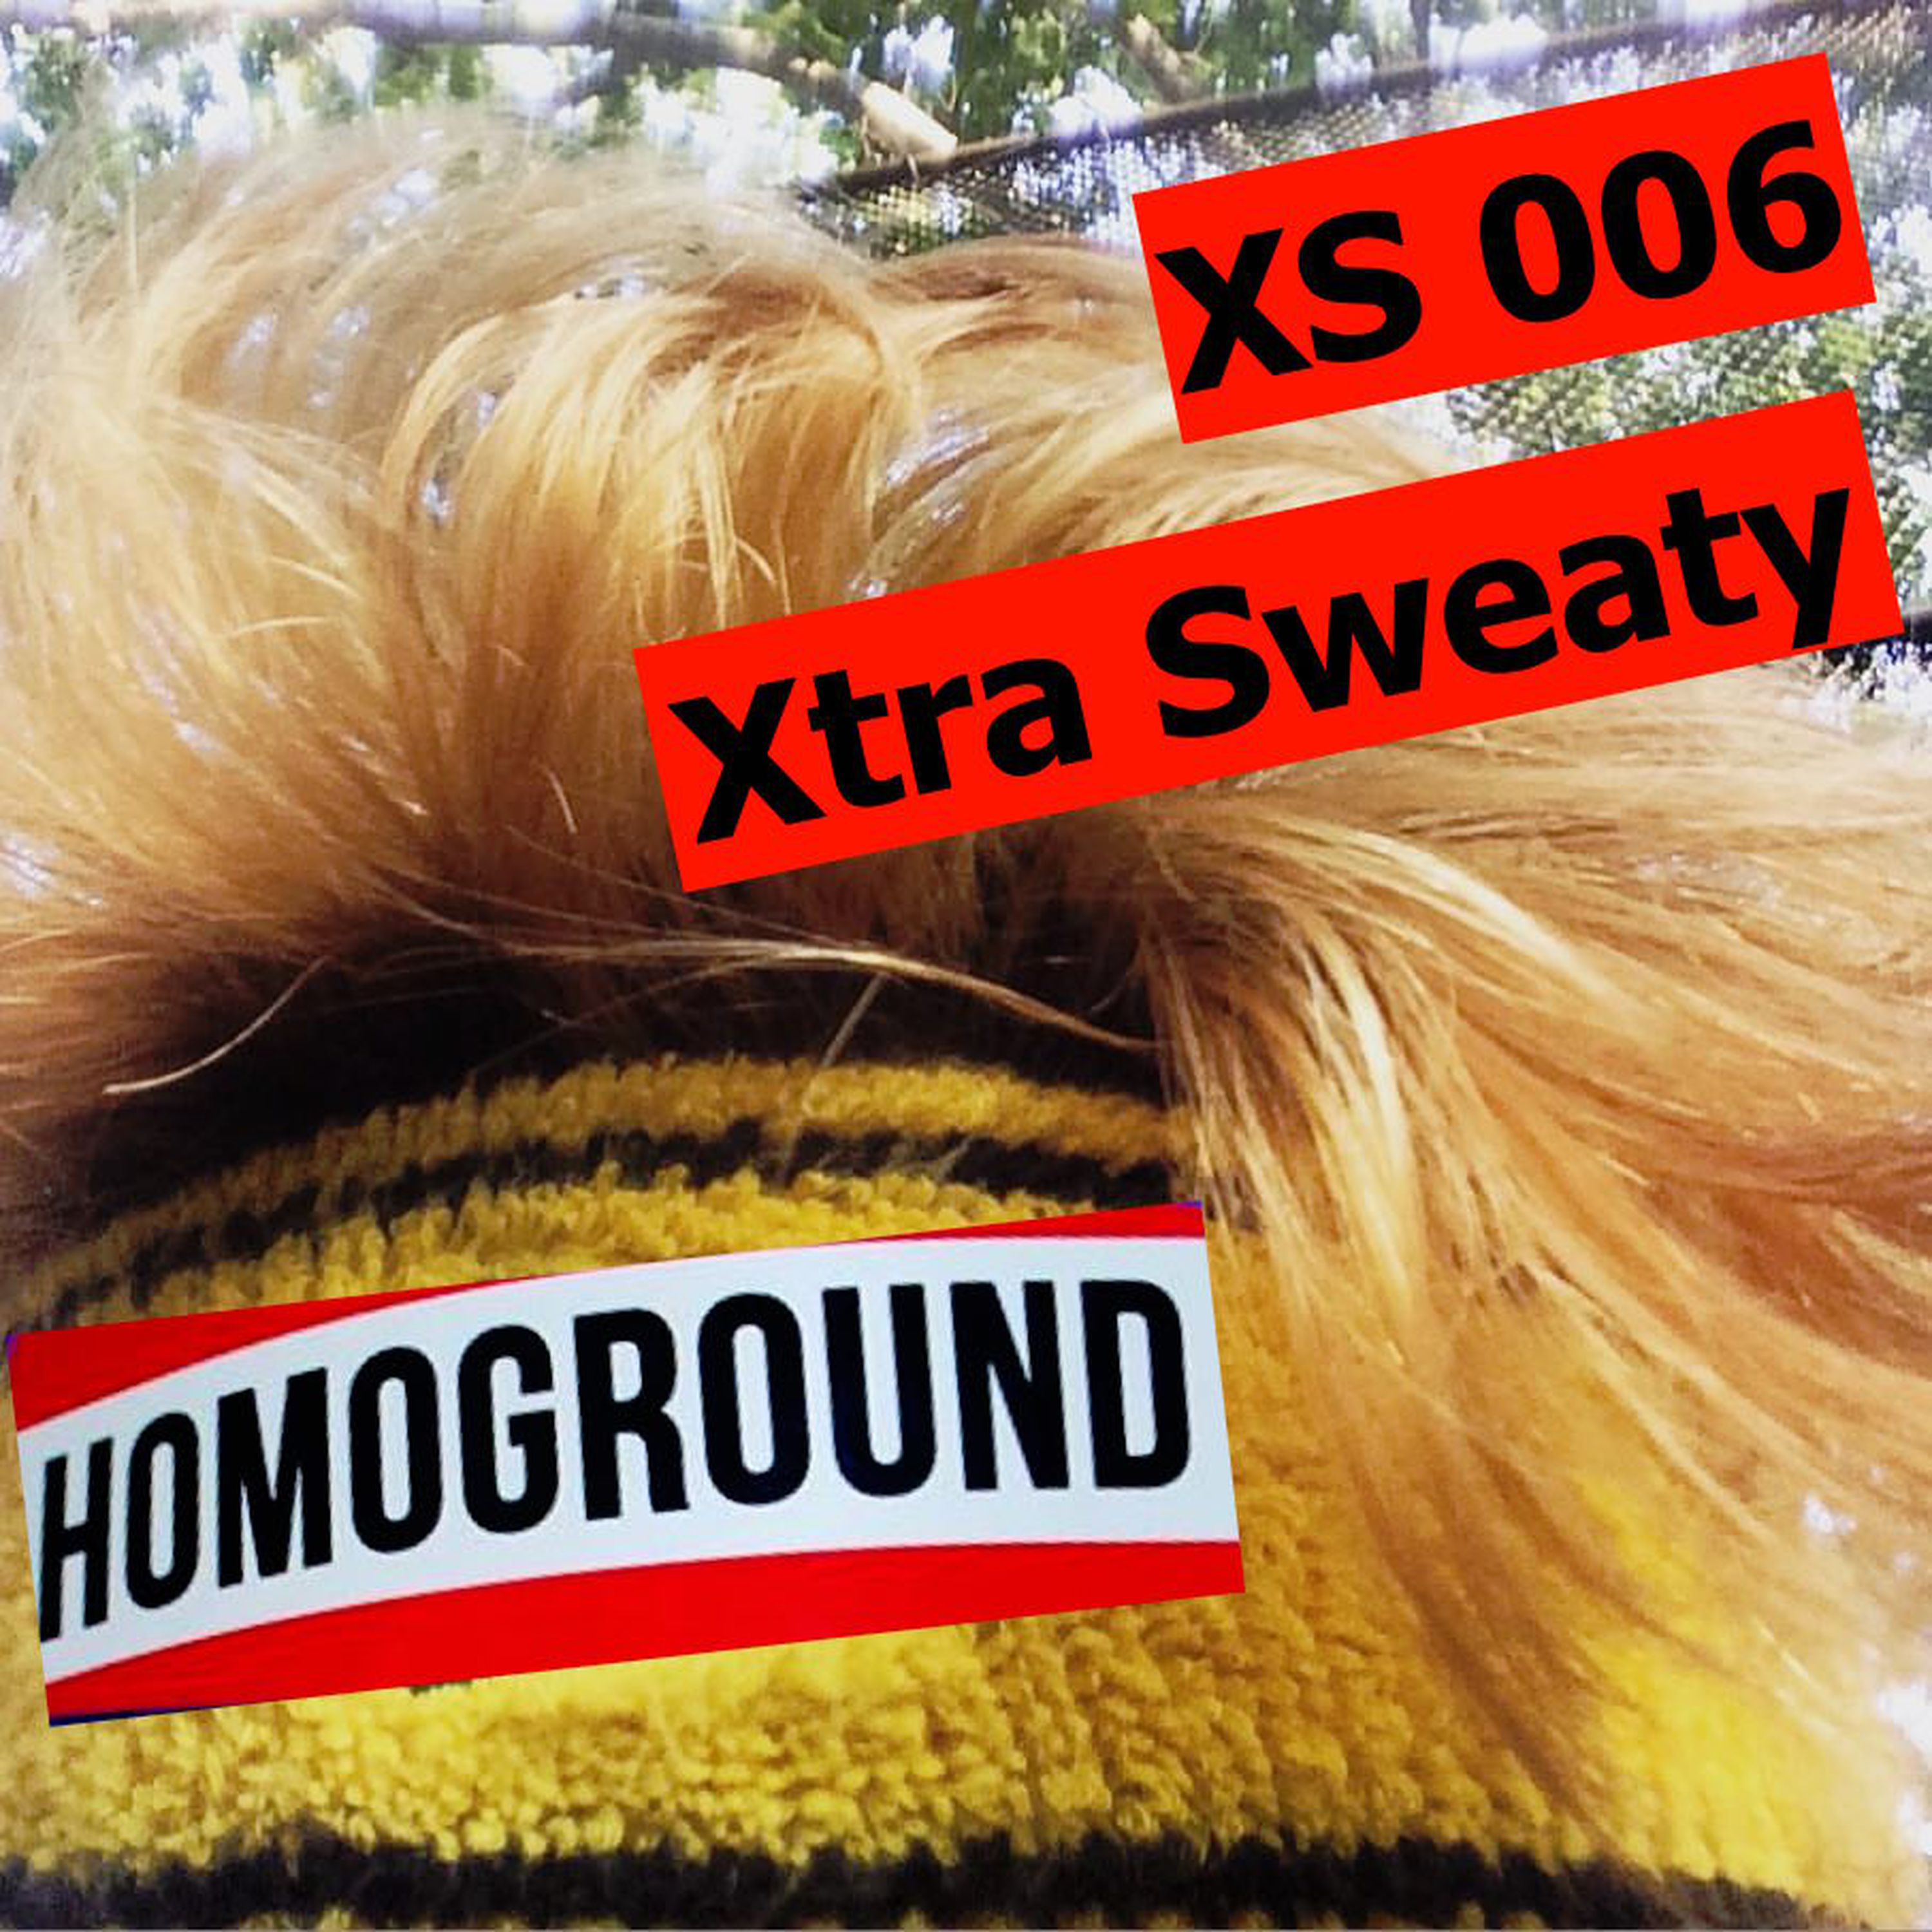 [Homoground XS006] XTRA SWEATY